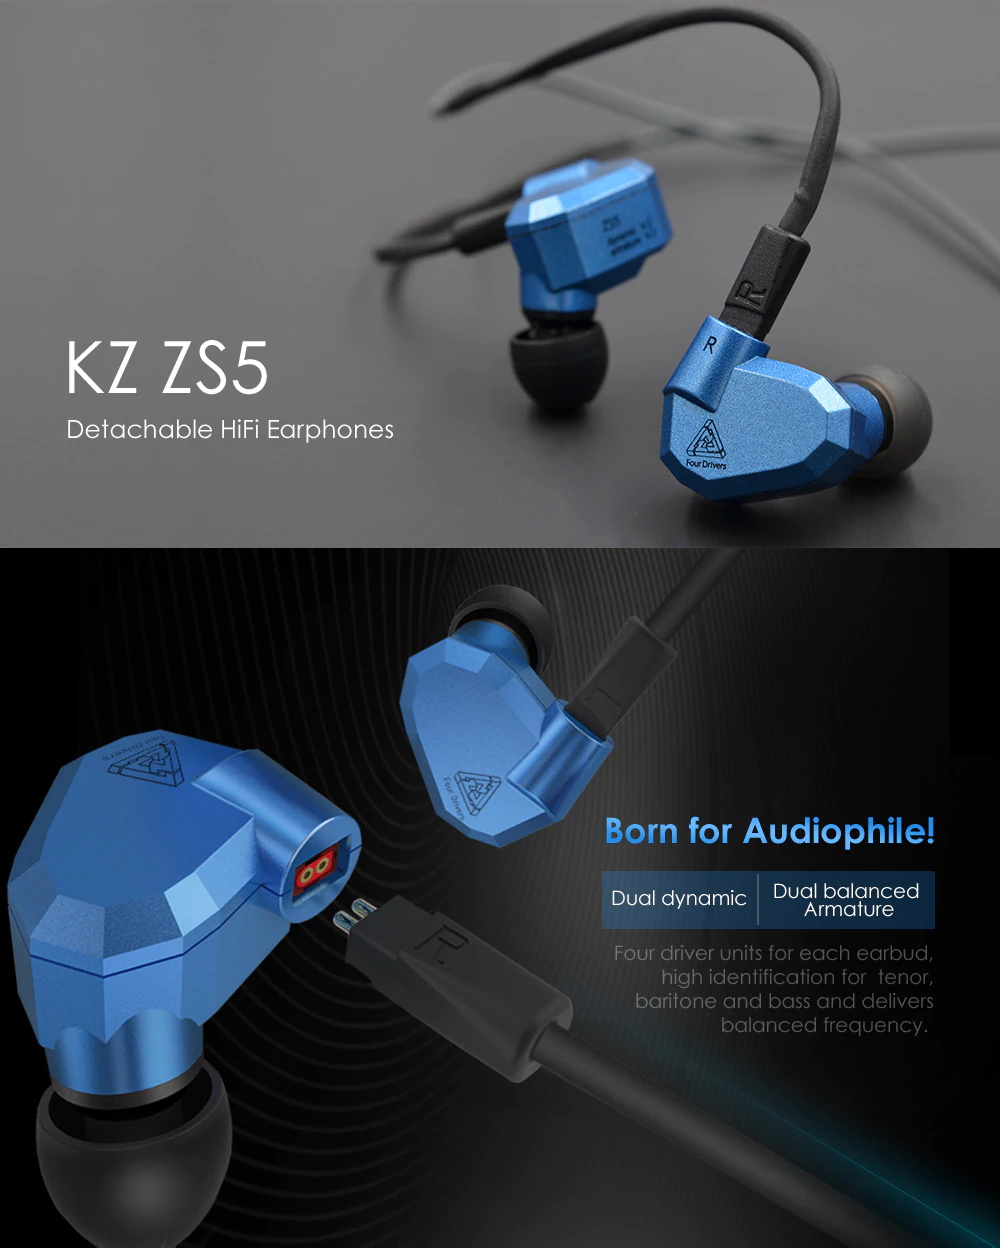 kz zs5 earphones